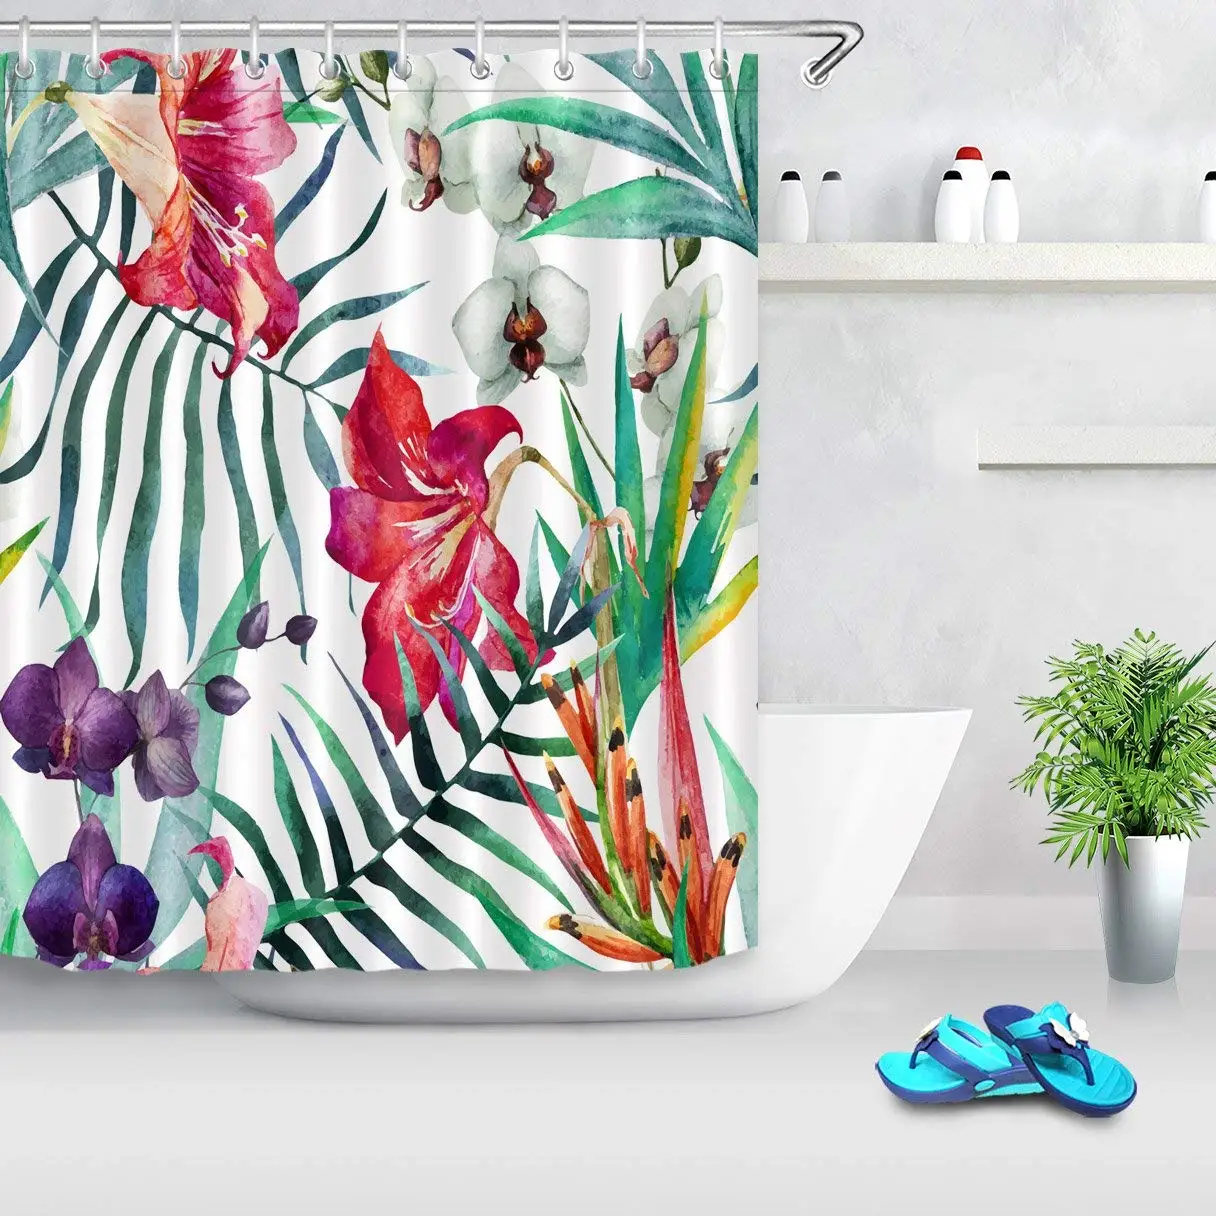 

Декоративная занавеска для душа с листьями, водонепроницаемая штора из полиэстера, стойкая к плесени, с белыми, красными, фиолетовыми цветами, для ванной комнаты